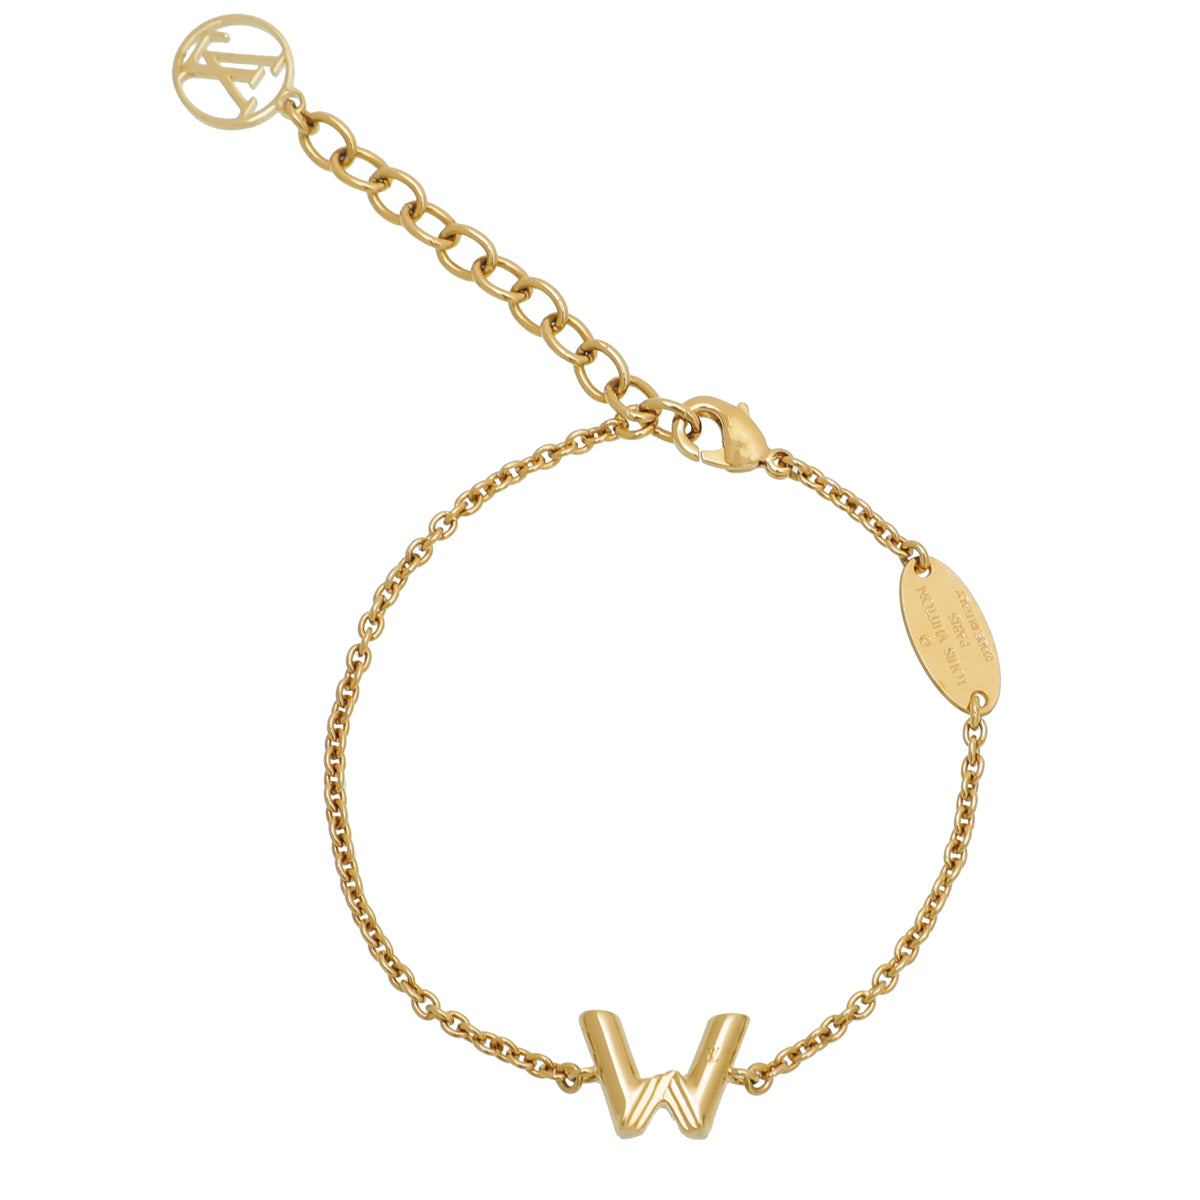 Pre-Owned LOUIS VUITTON Louis Vuitton Brasserie Must-Have Bracelet M64515  Notation Size S Metal Gold Bangle (Good) - Walmart.com